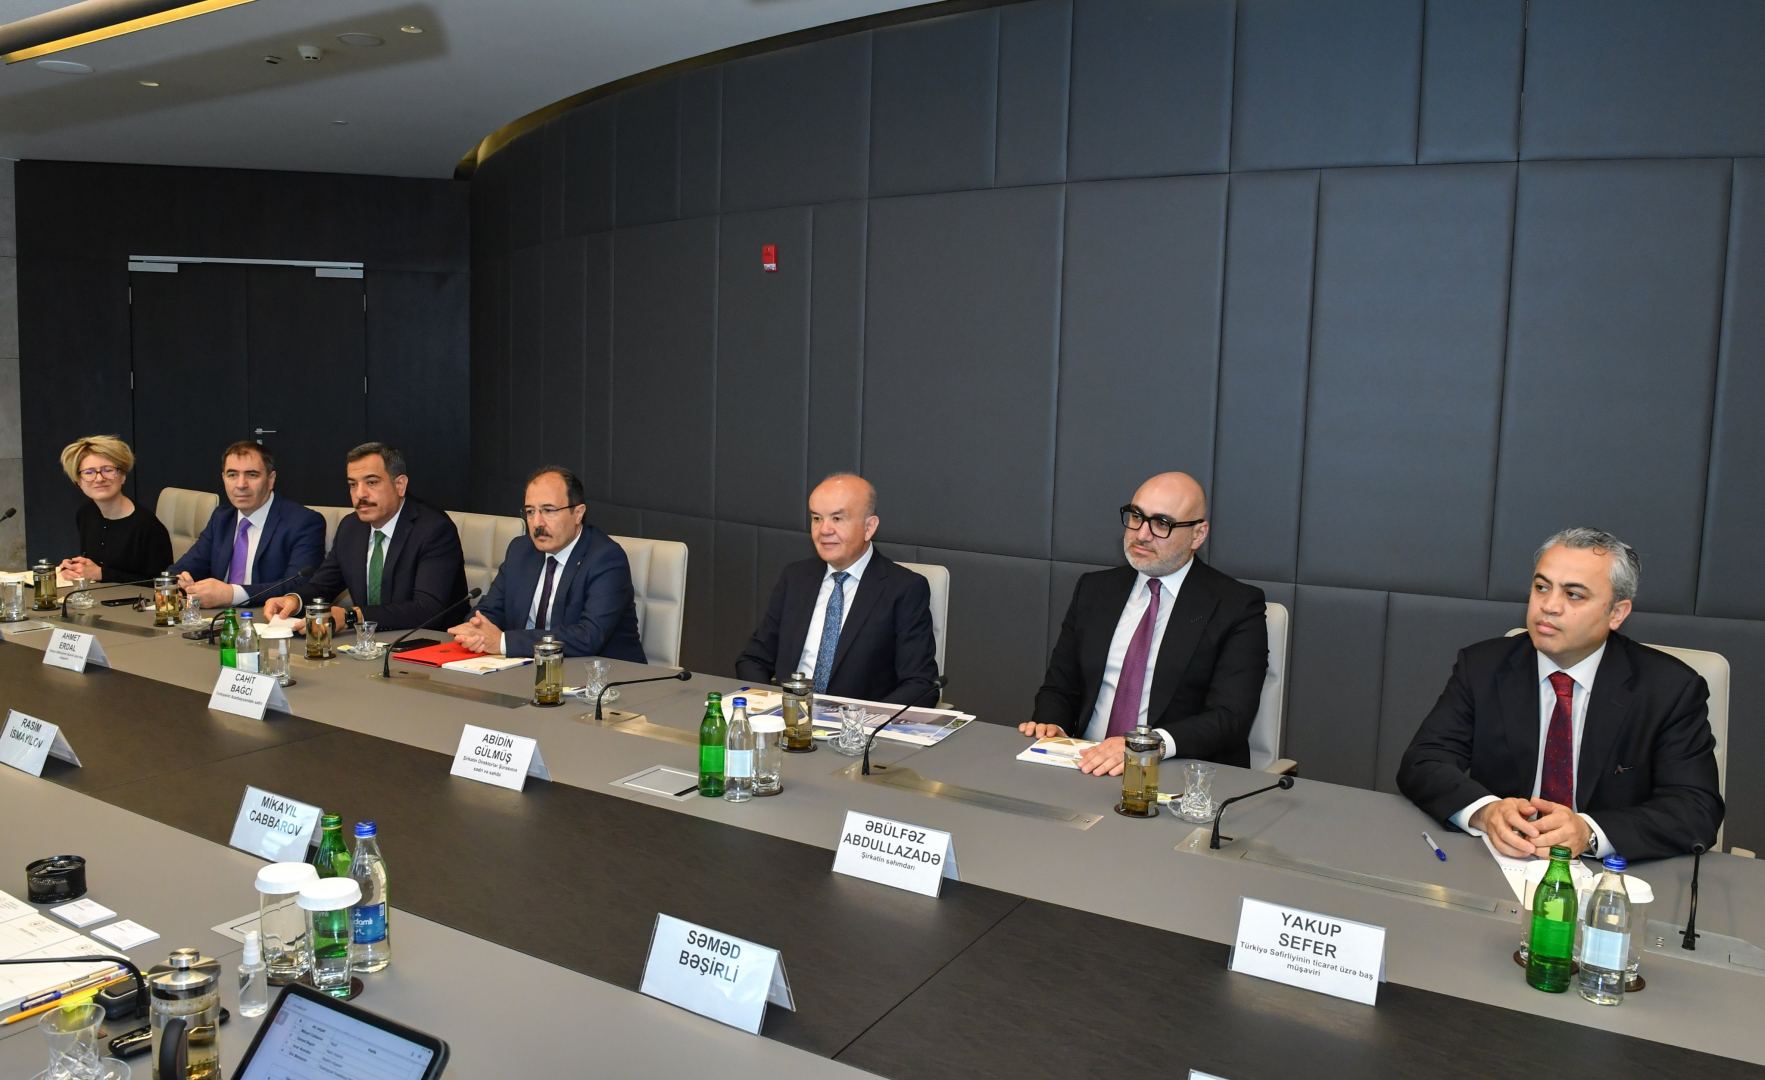 Азербайджан и Турция расширяют сотрудничество в сфере фармацевтики (ФОТО)